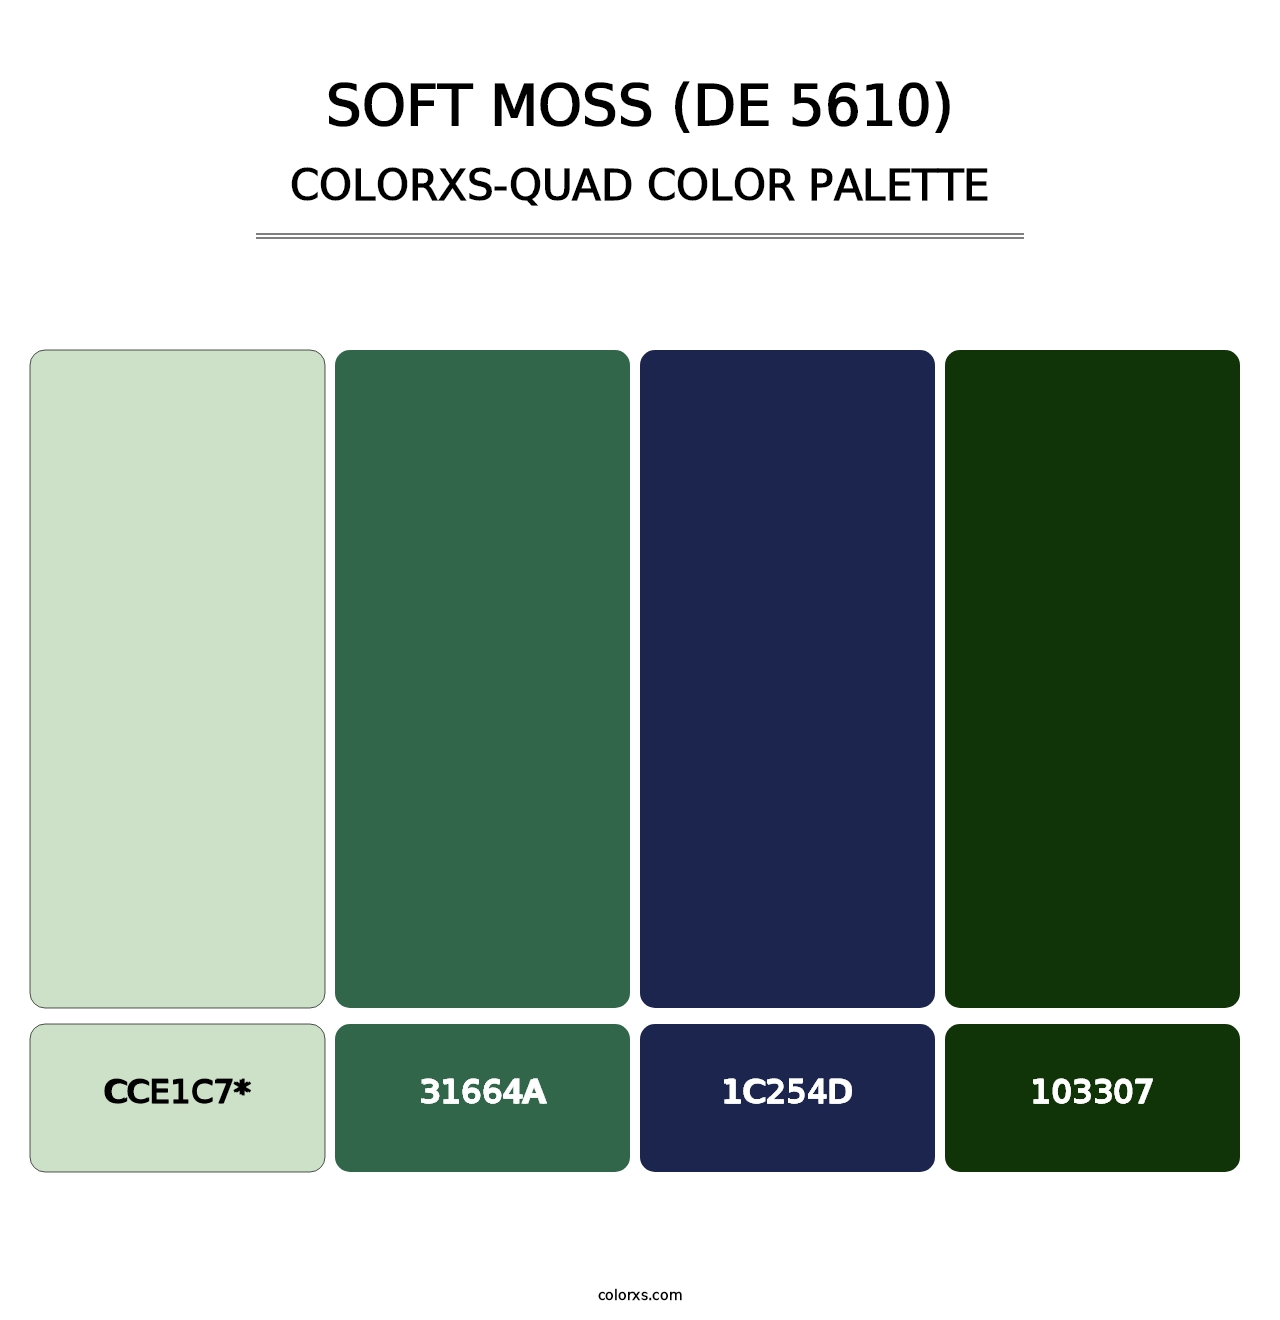 Soft Moss (DE 5610) - Colorxs Quad Palette